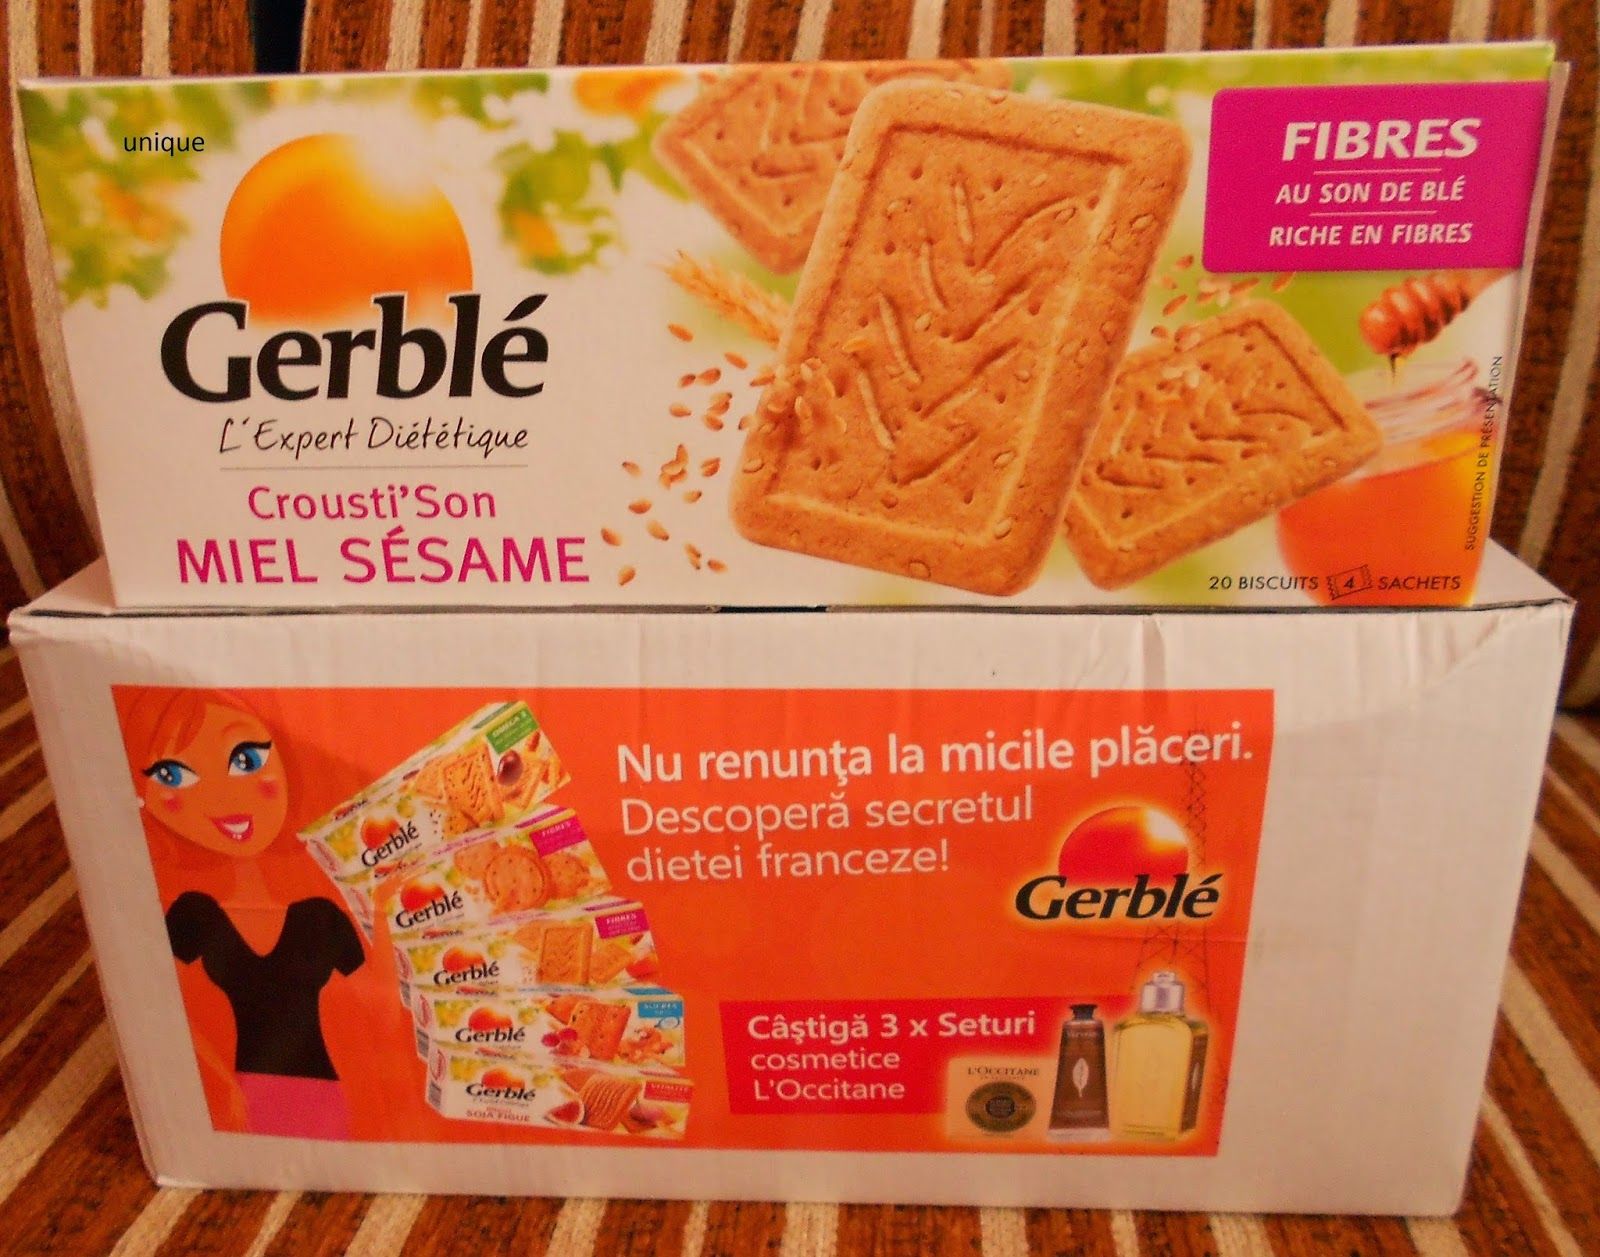 Biscuiti Secretul Dietetic Francez, Gerble